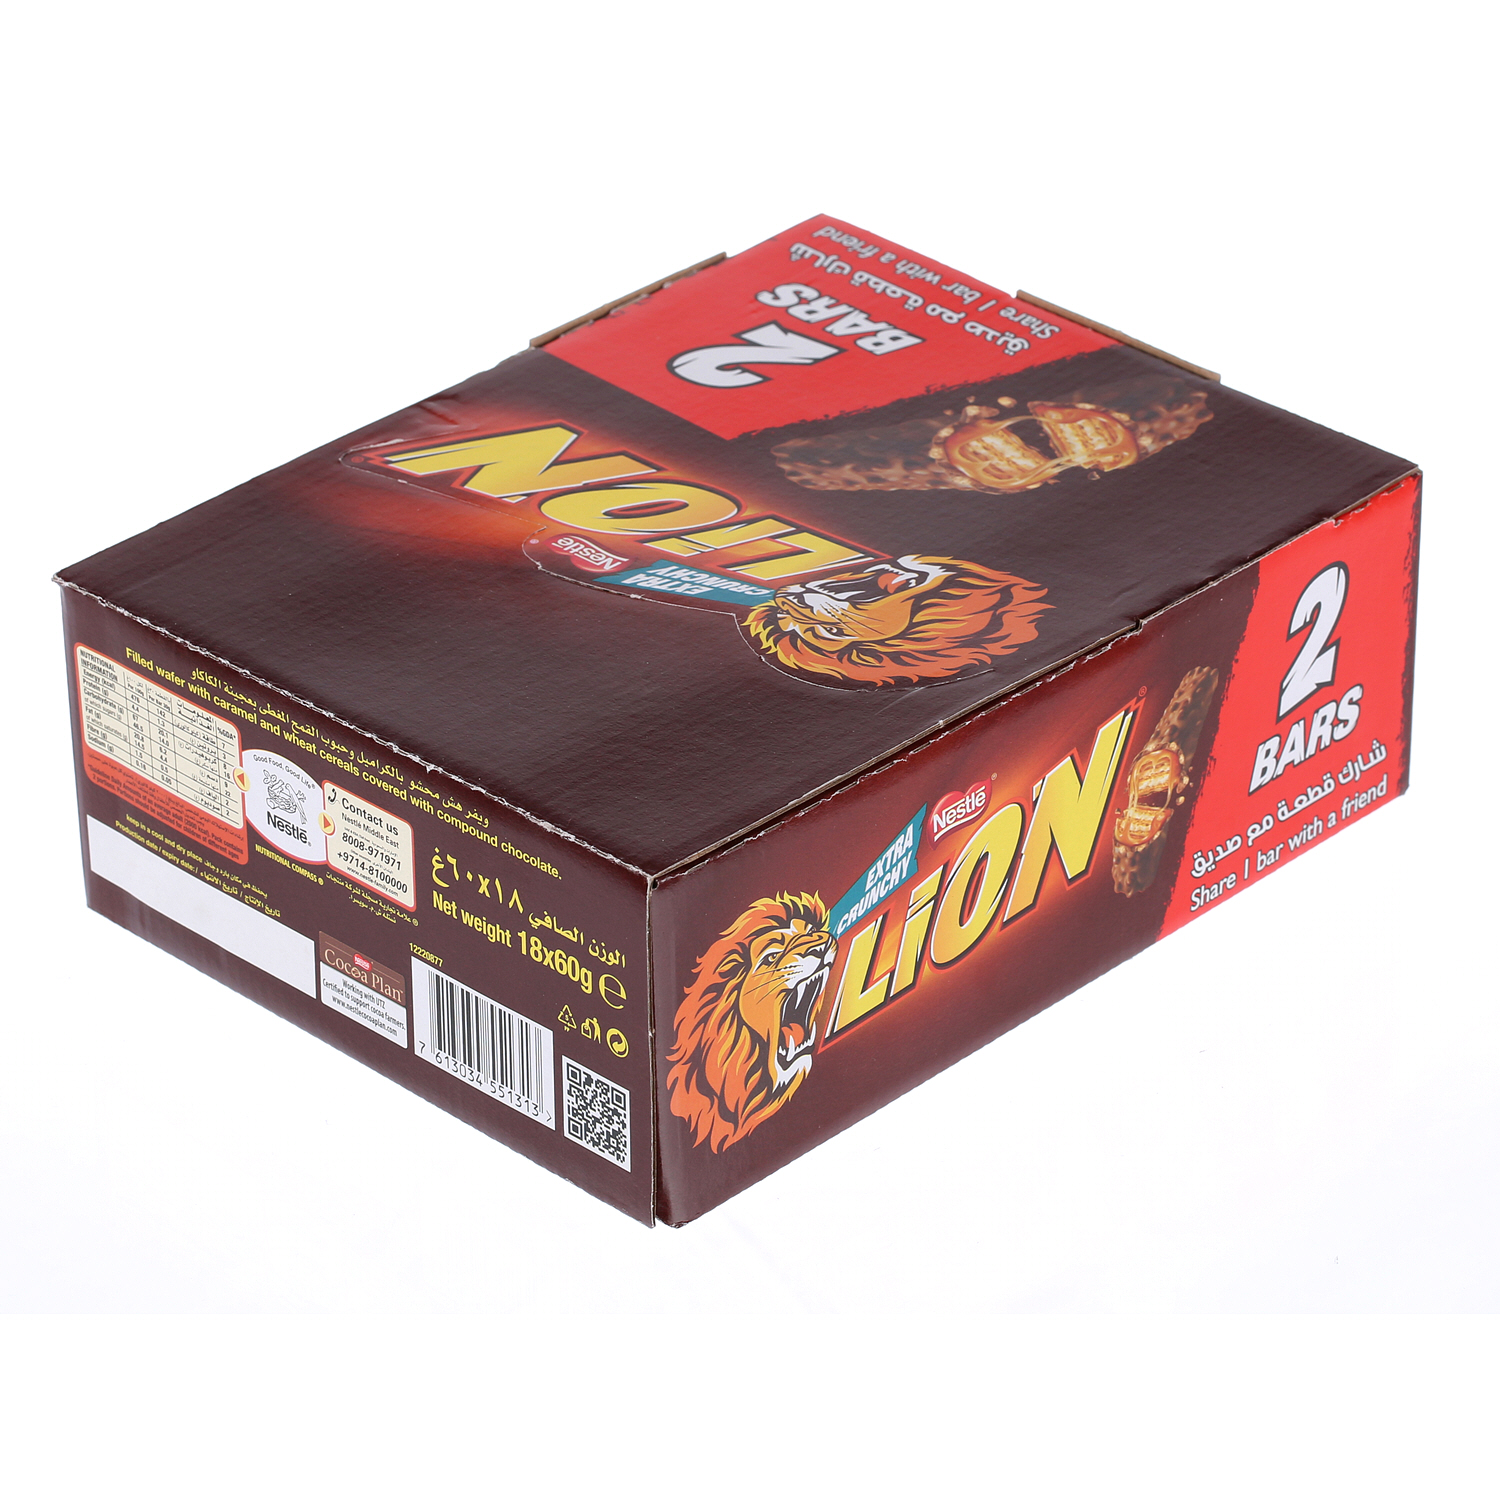 Nestlé Lion Chocolate Bar 2 Packs 60gm × 18'S